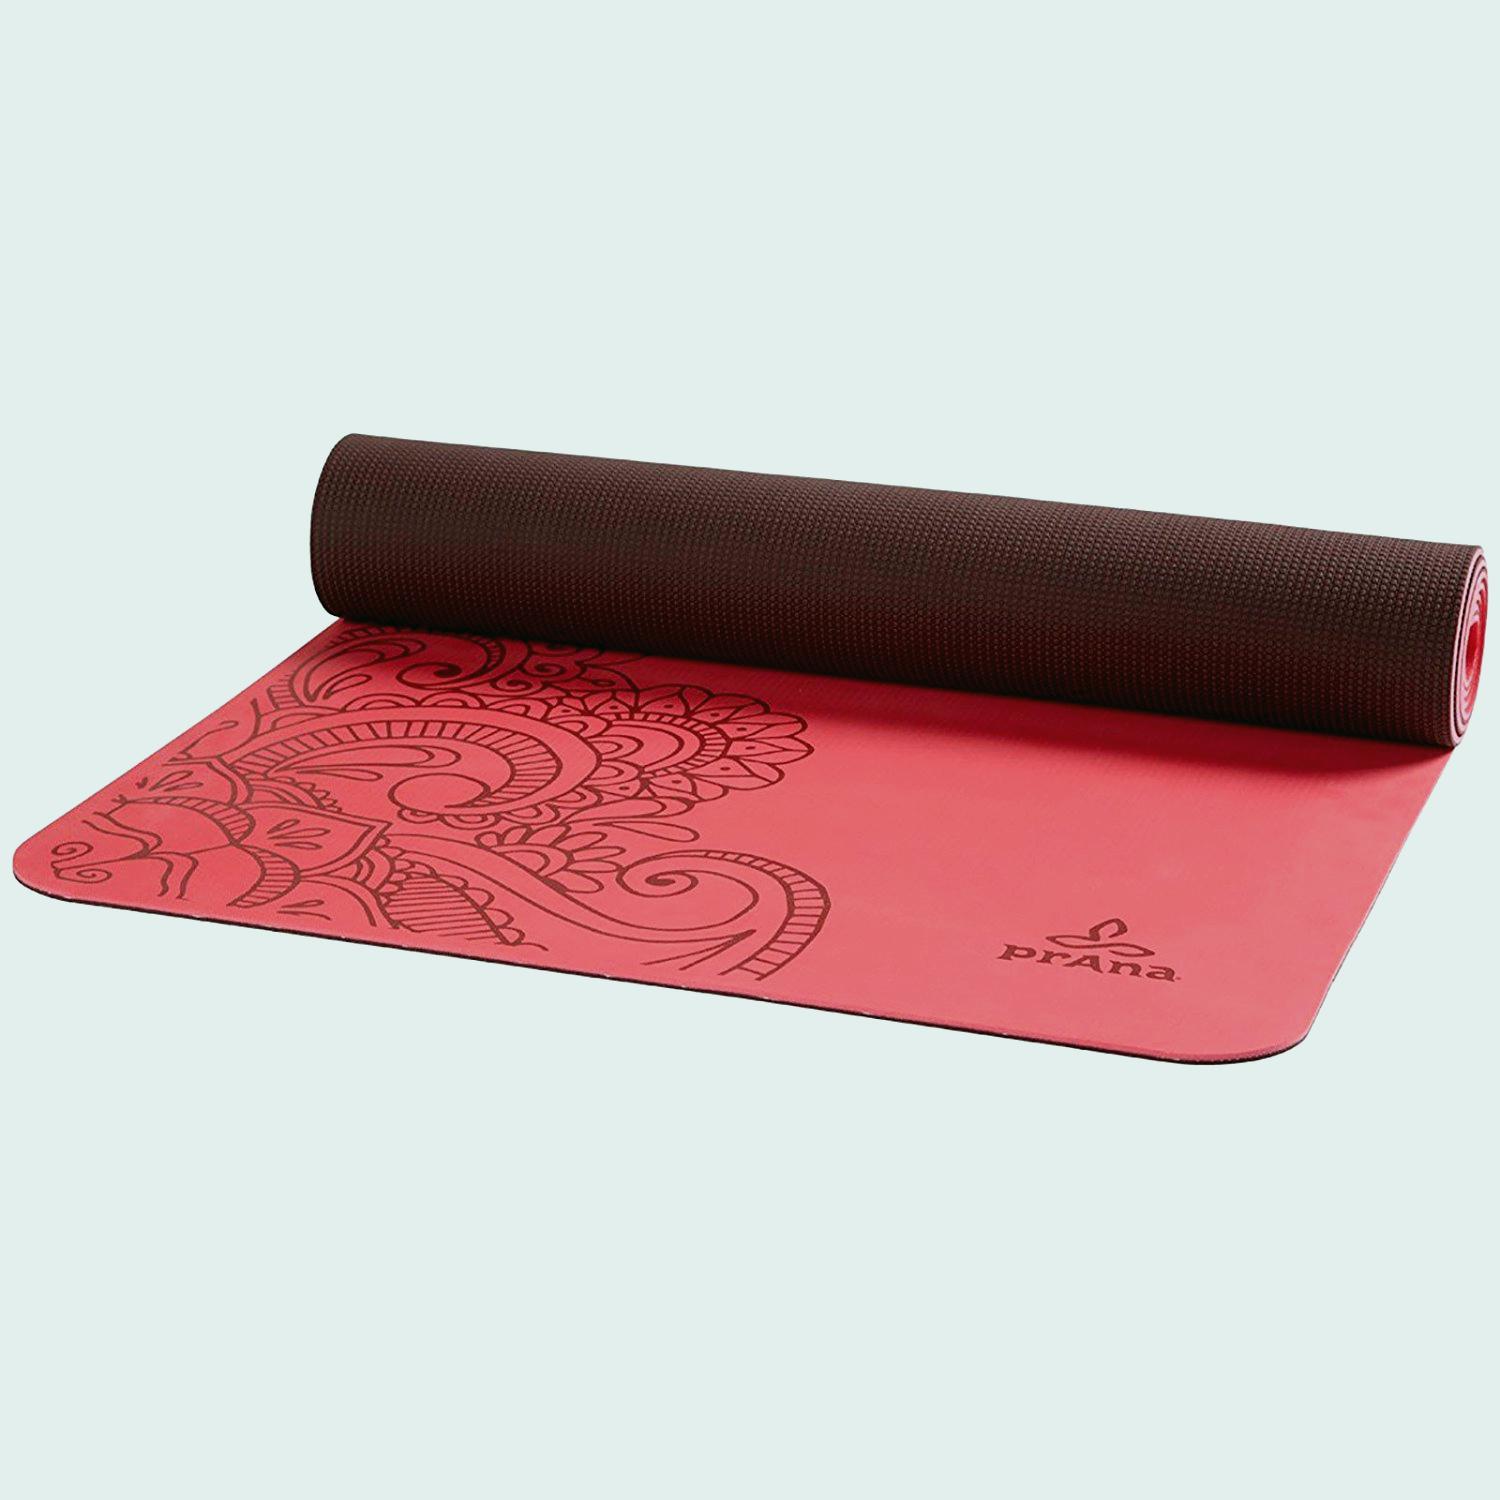 Manduka Yoga Mat Fresh Amazon Prana Henna E C O Yoga Mat E Size ...